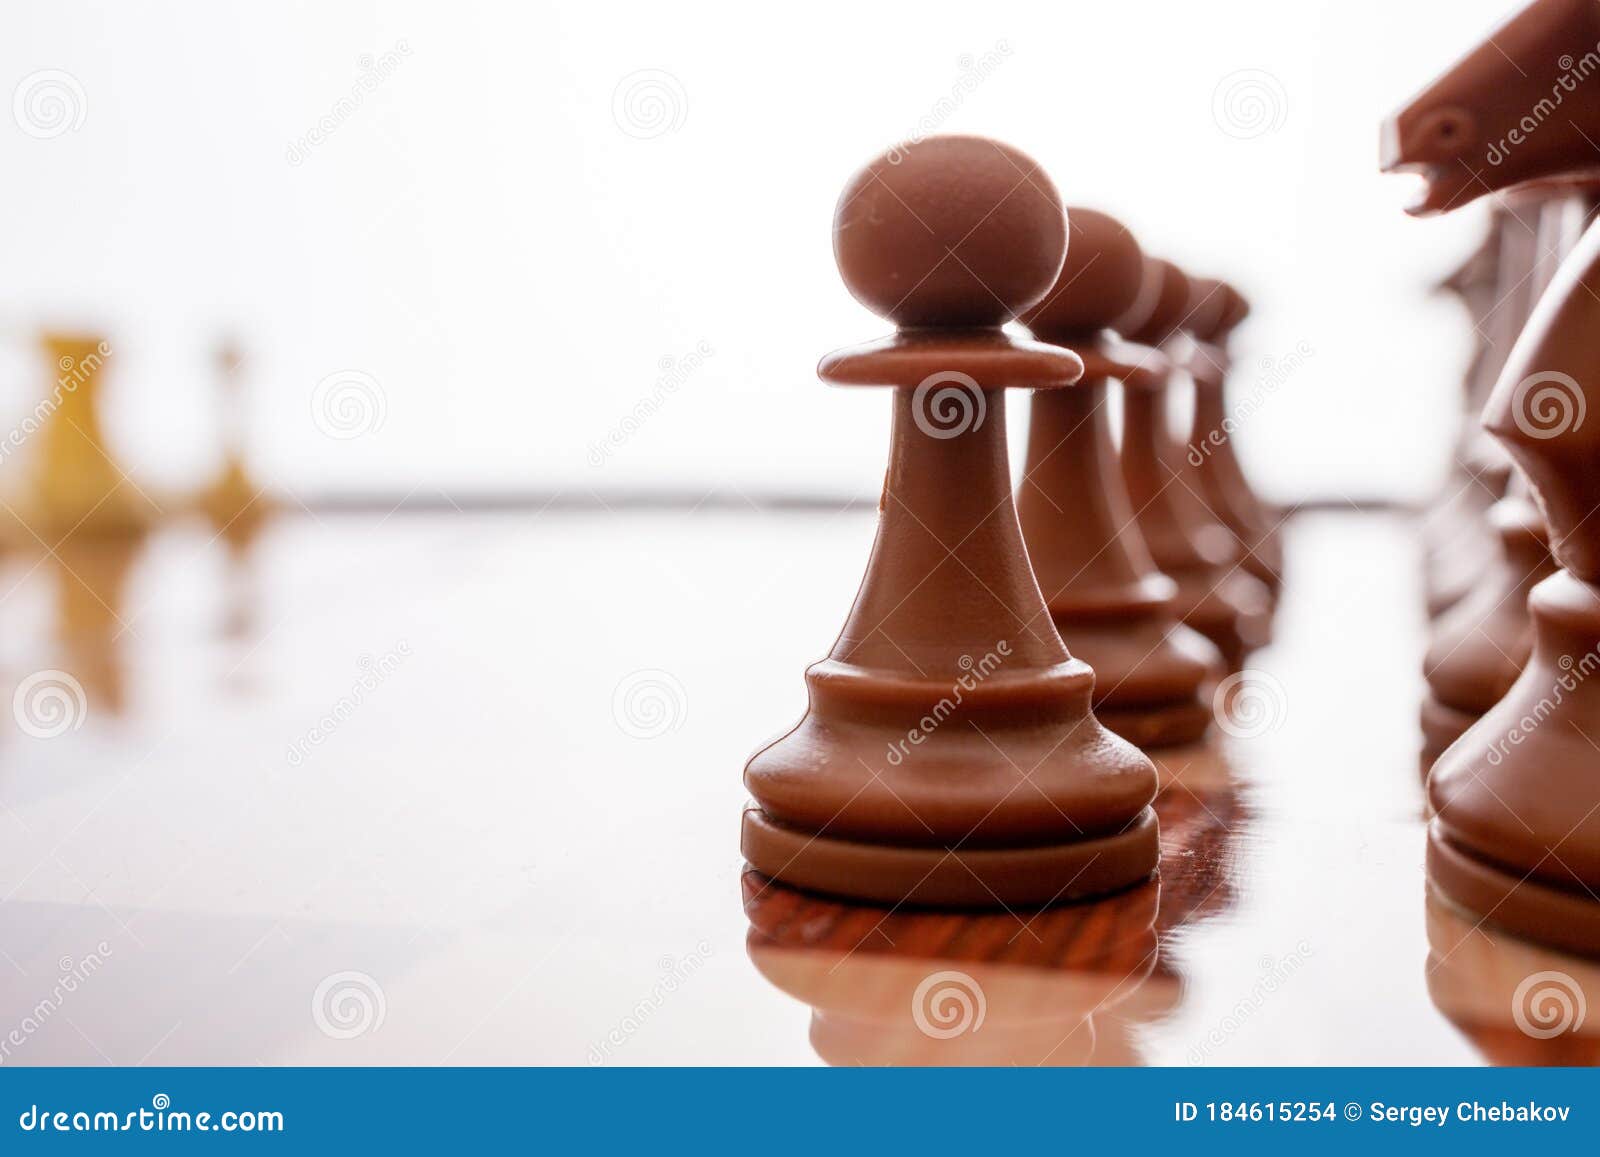 Dia mundial do xadrez